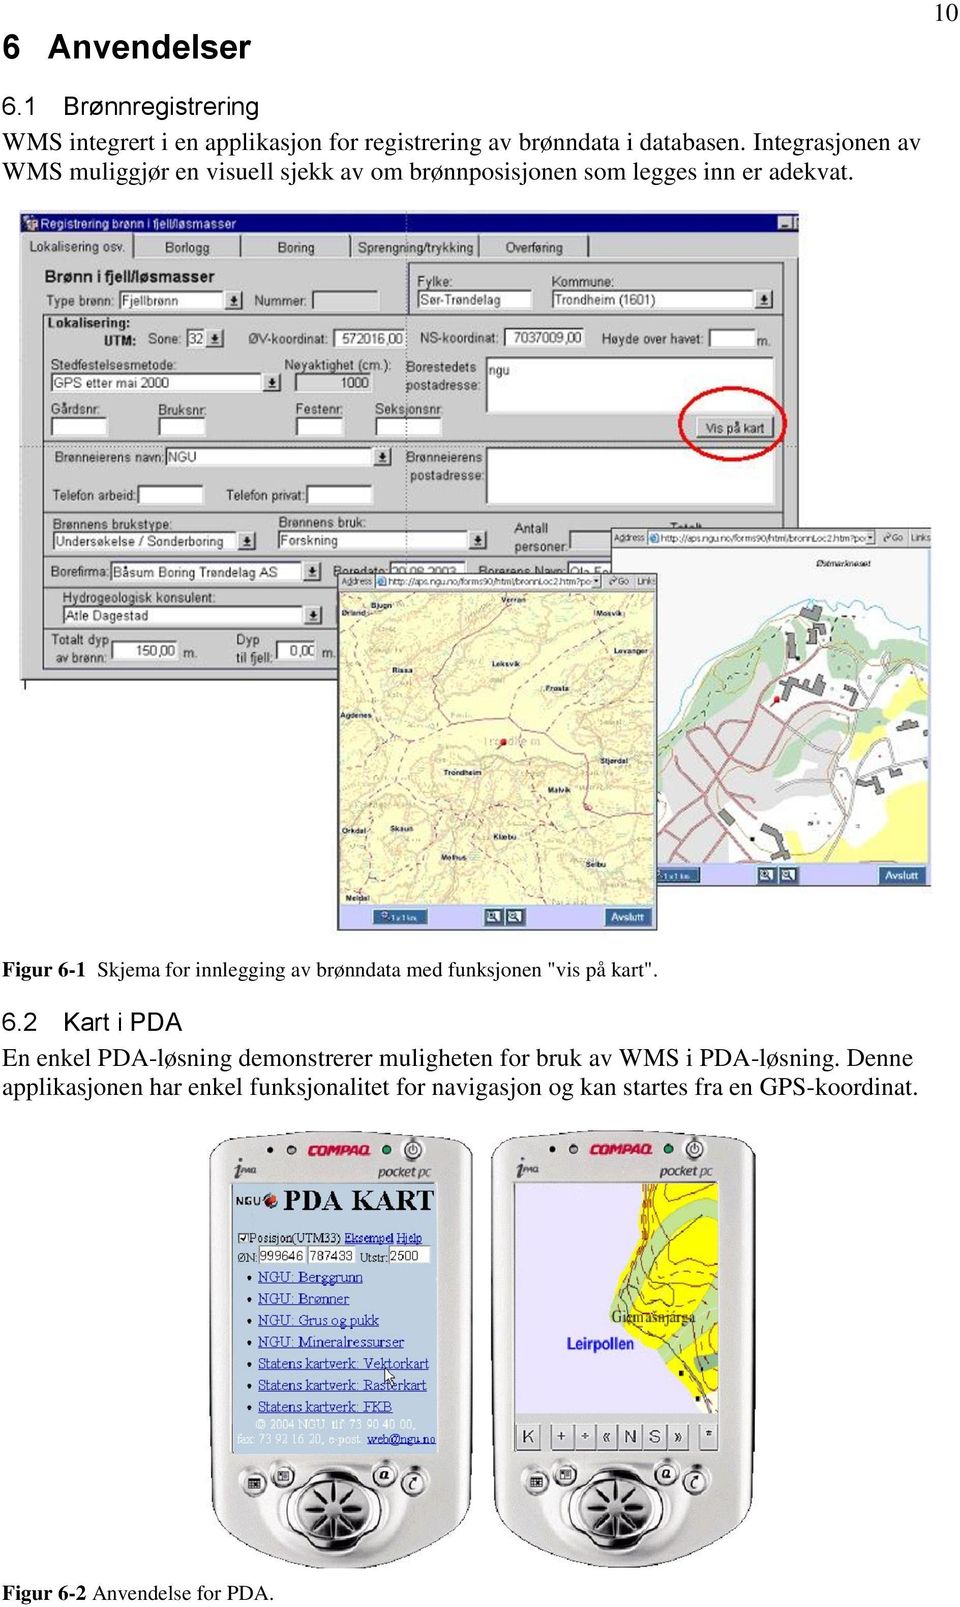 Figur 6-1 Skjema for innlegging av brønndata med funksjonen "vis på kart". 6.2 Kart i PDA En enkel PDA-løsning demonstrerer muligheten for bruk av WMS i PDA-løsning.